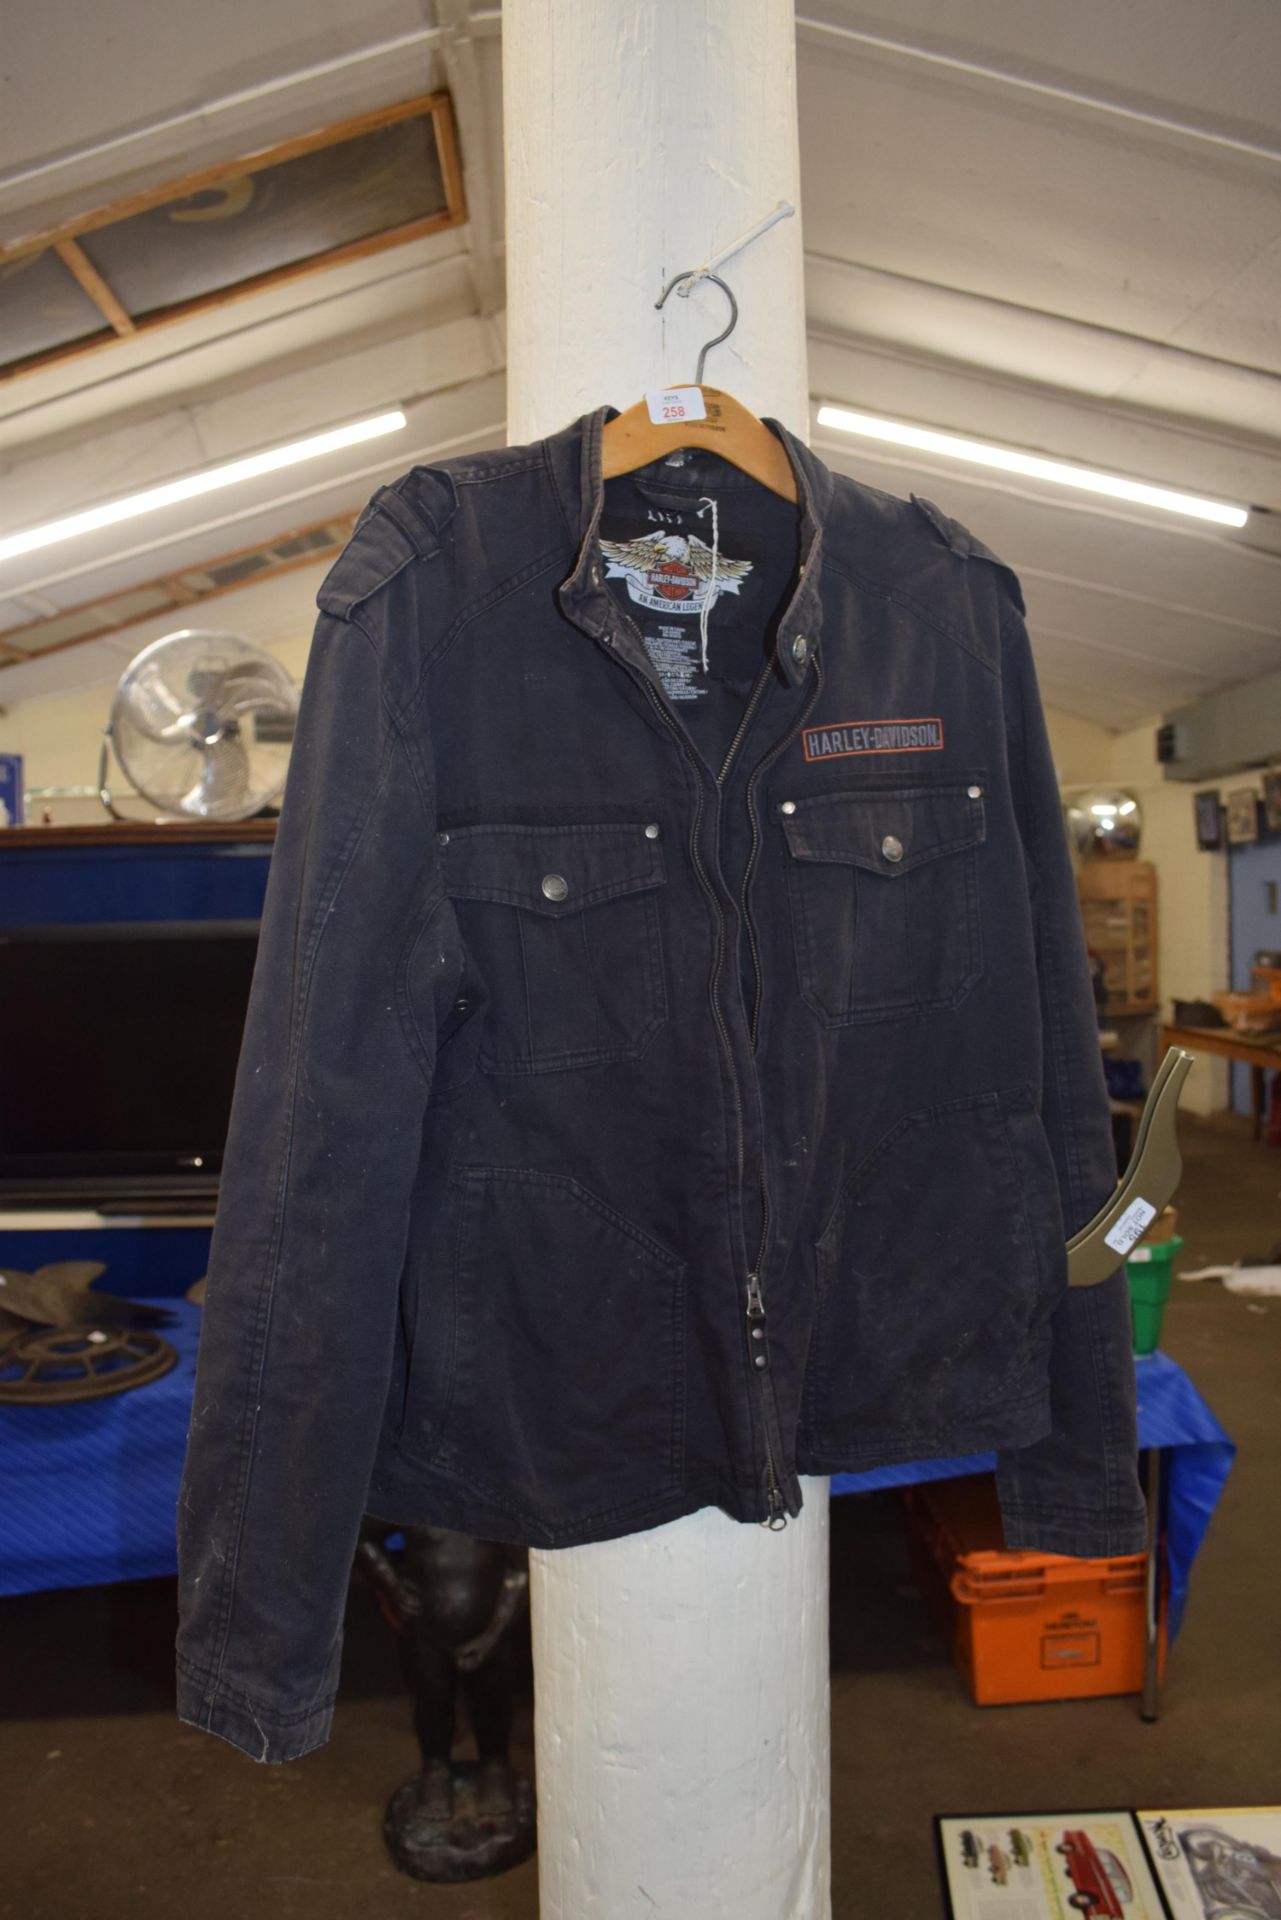 Harley Davidson branded denim jacket